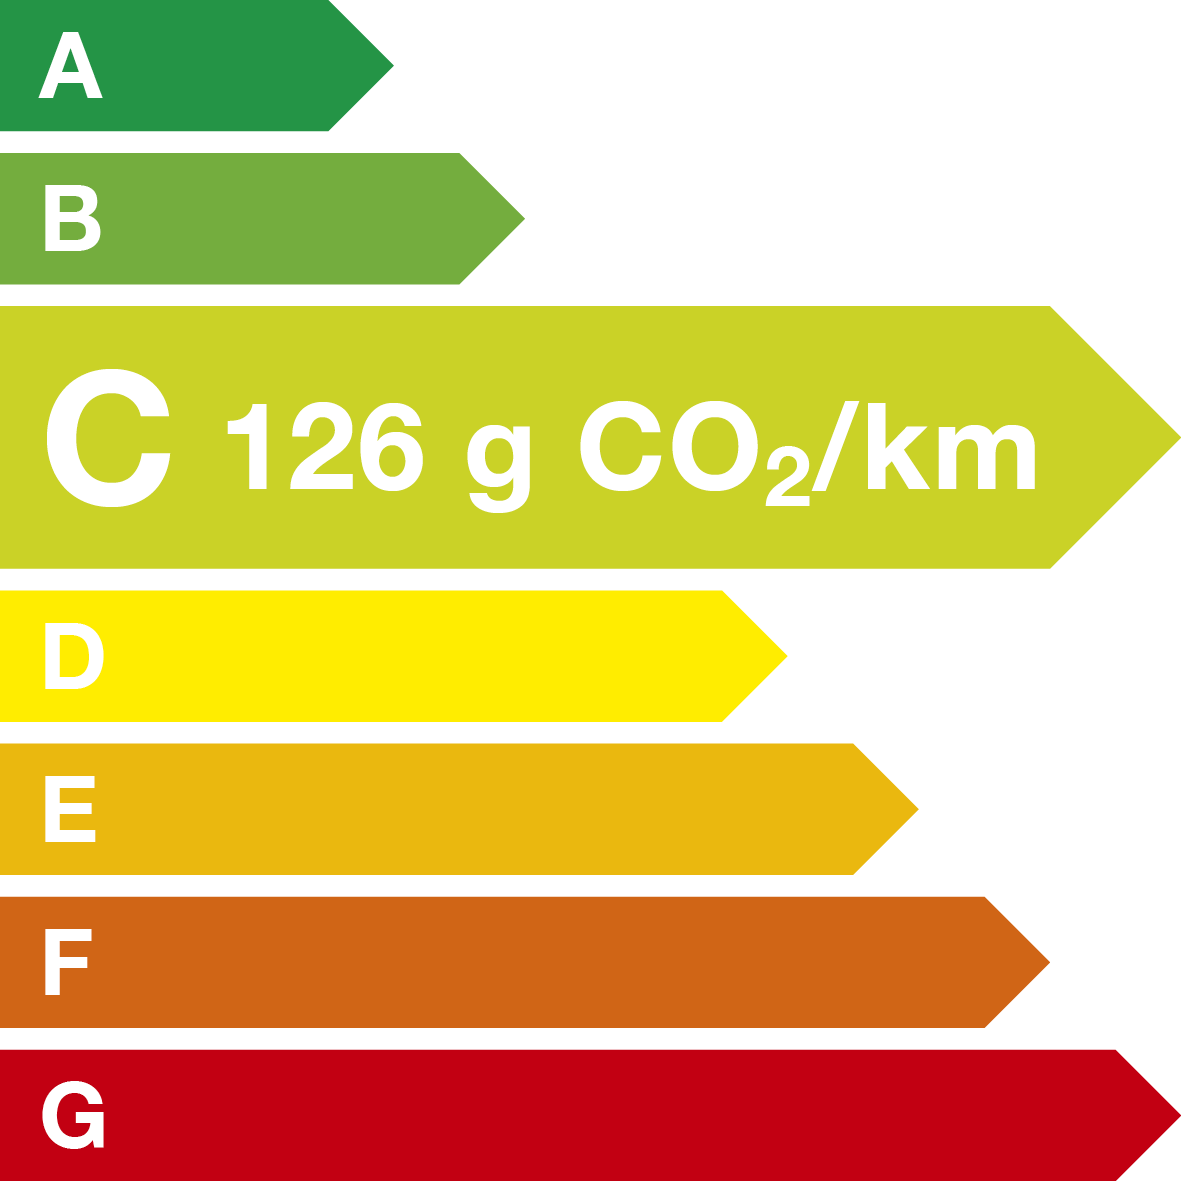 energy label